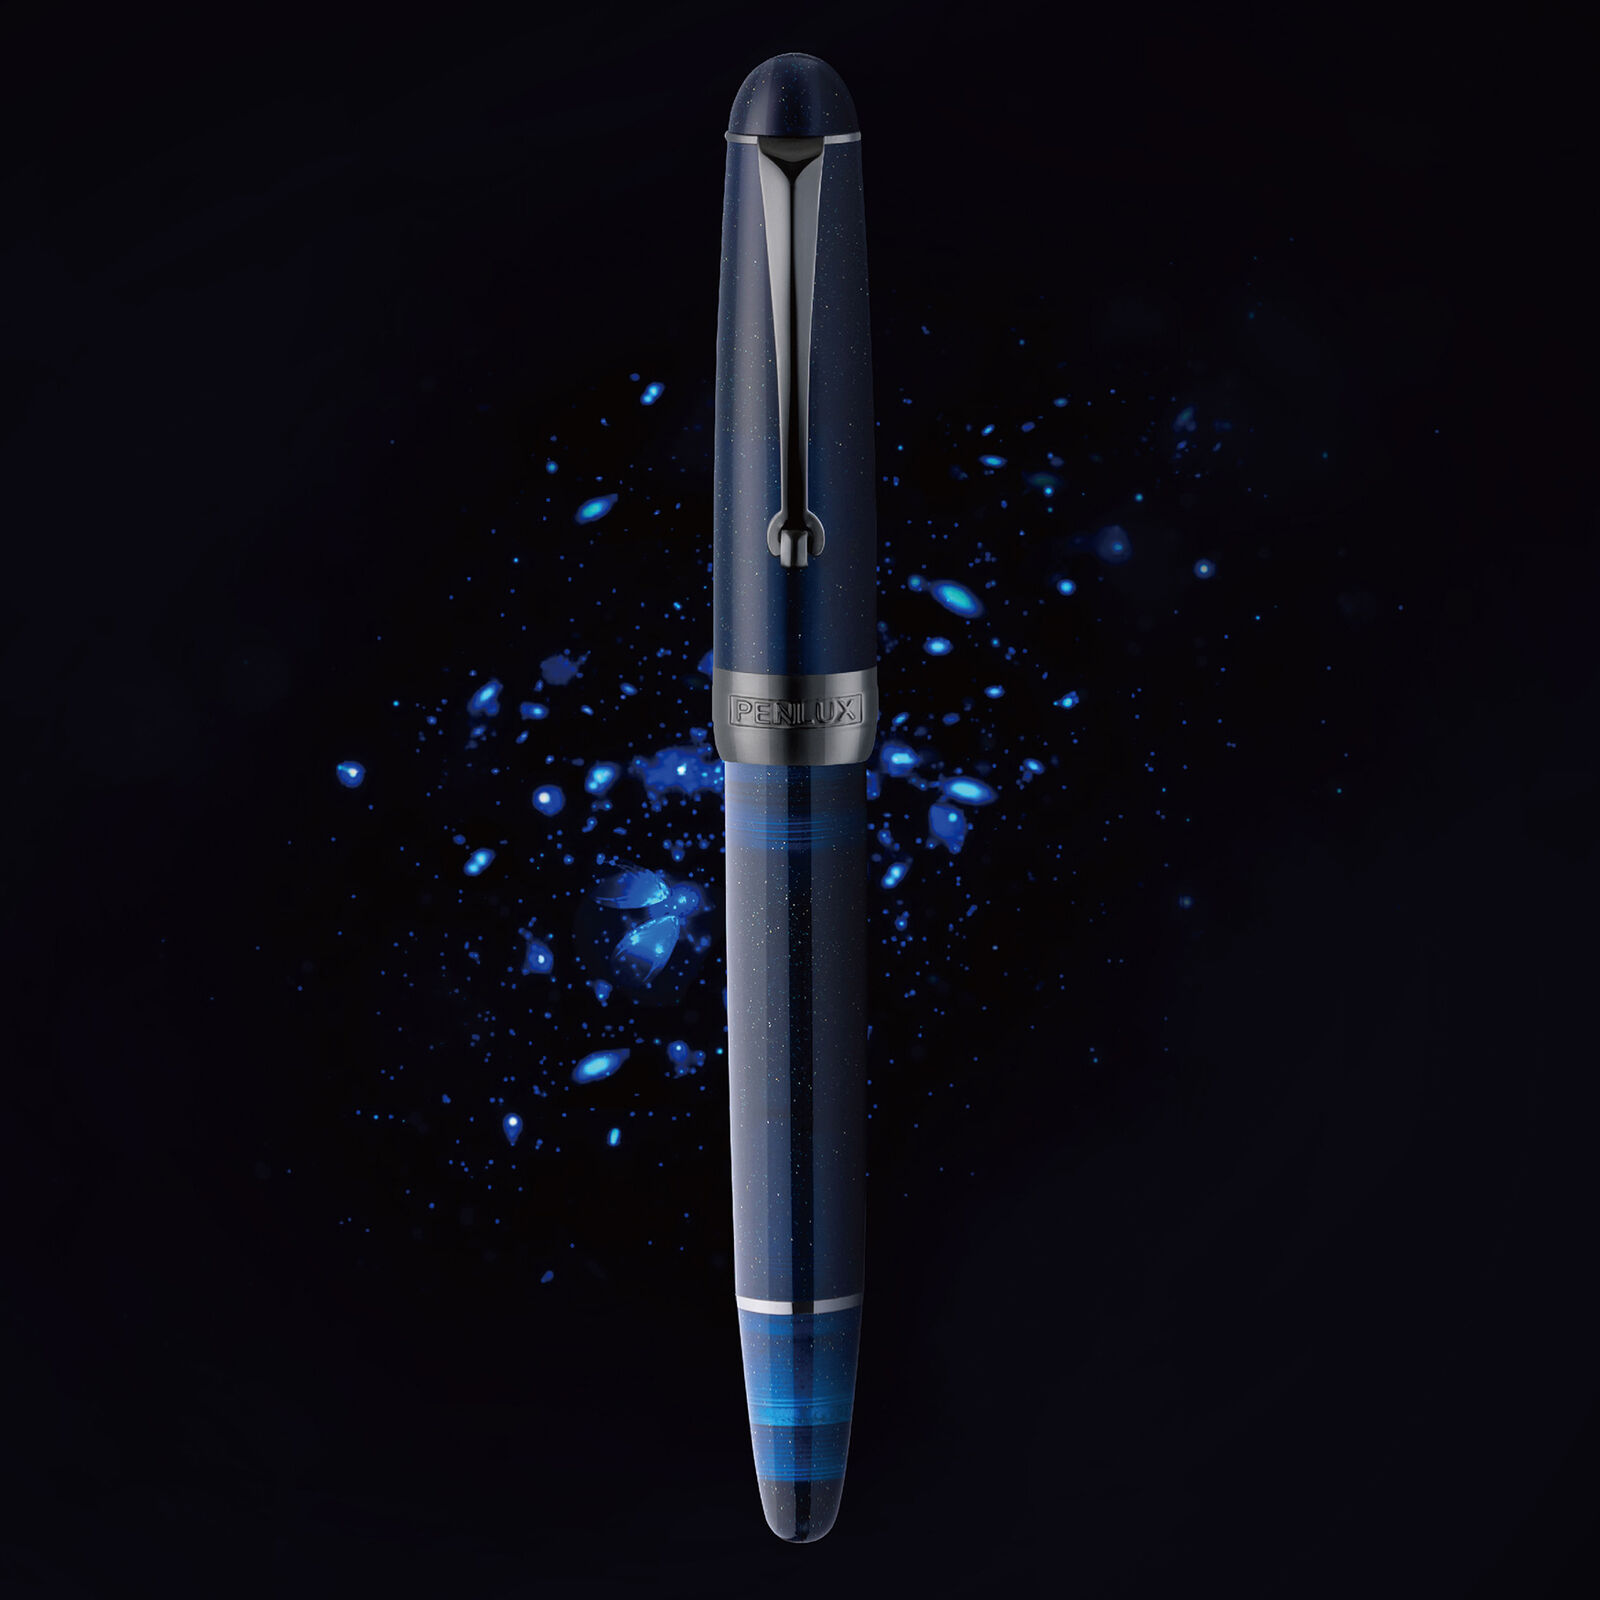 Penlux Masterpiece Delgado Fountain Pen in Firefly - Fine Point - NEW in Box